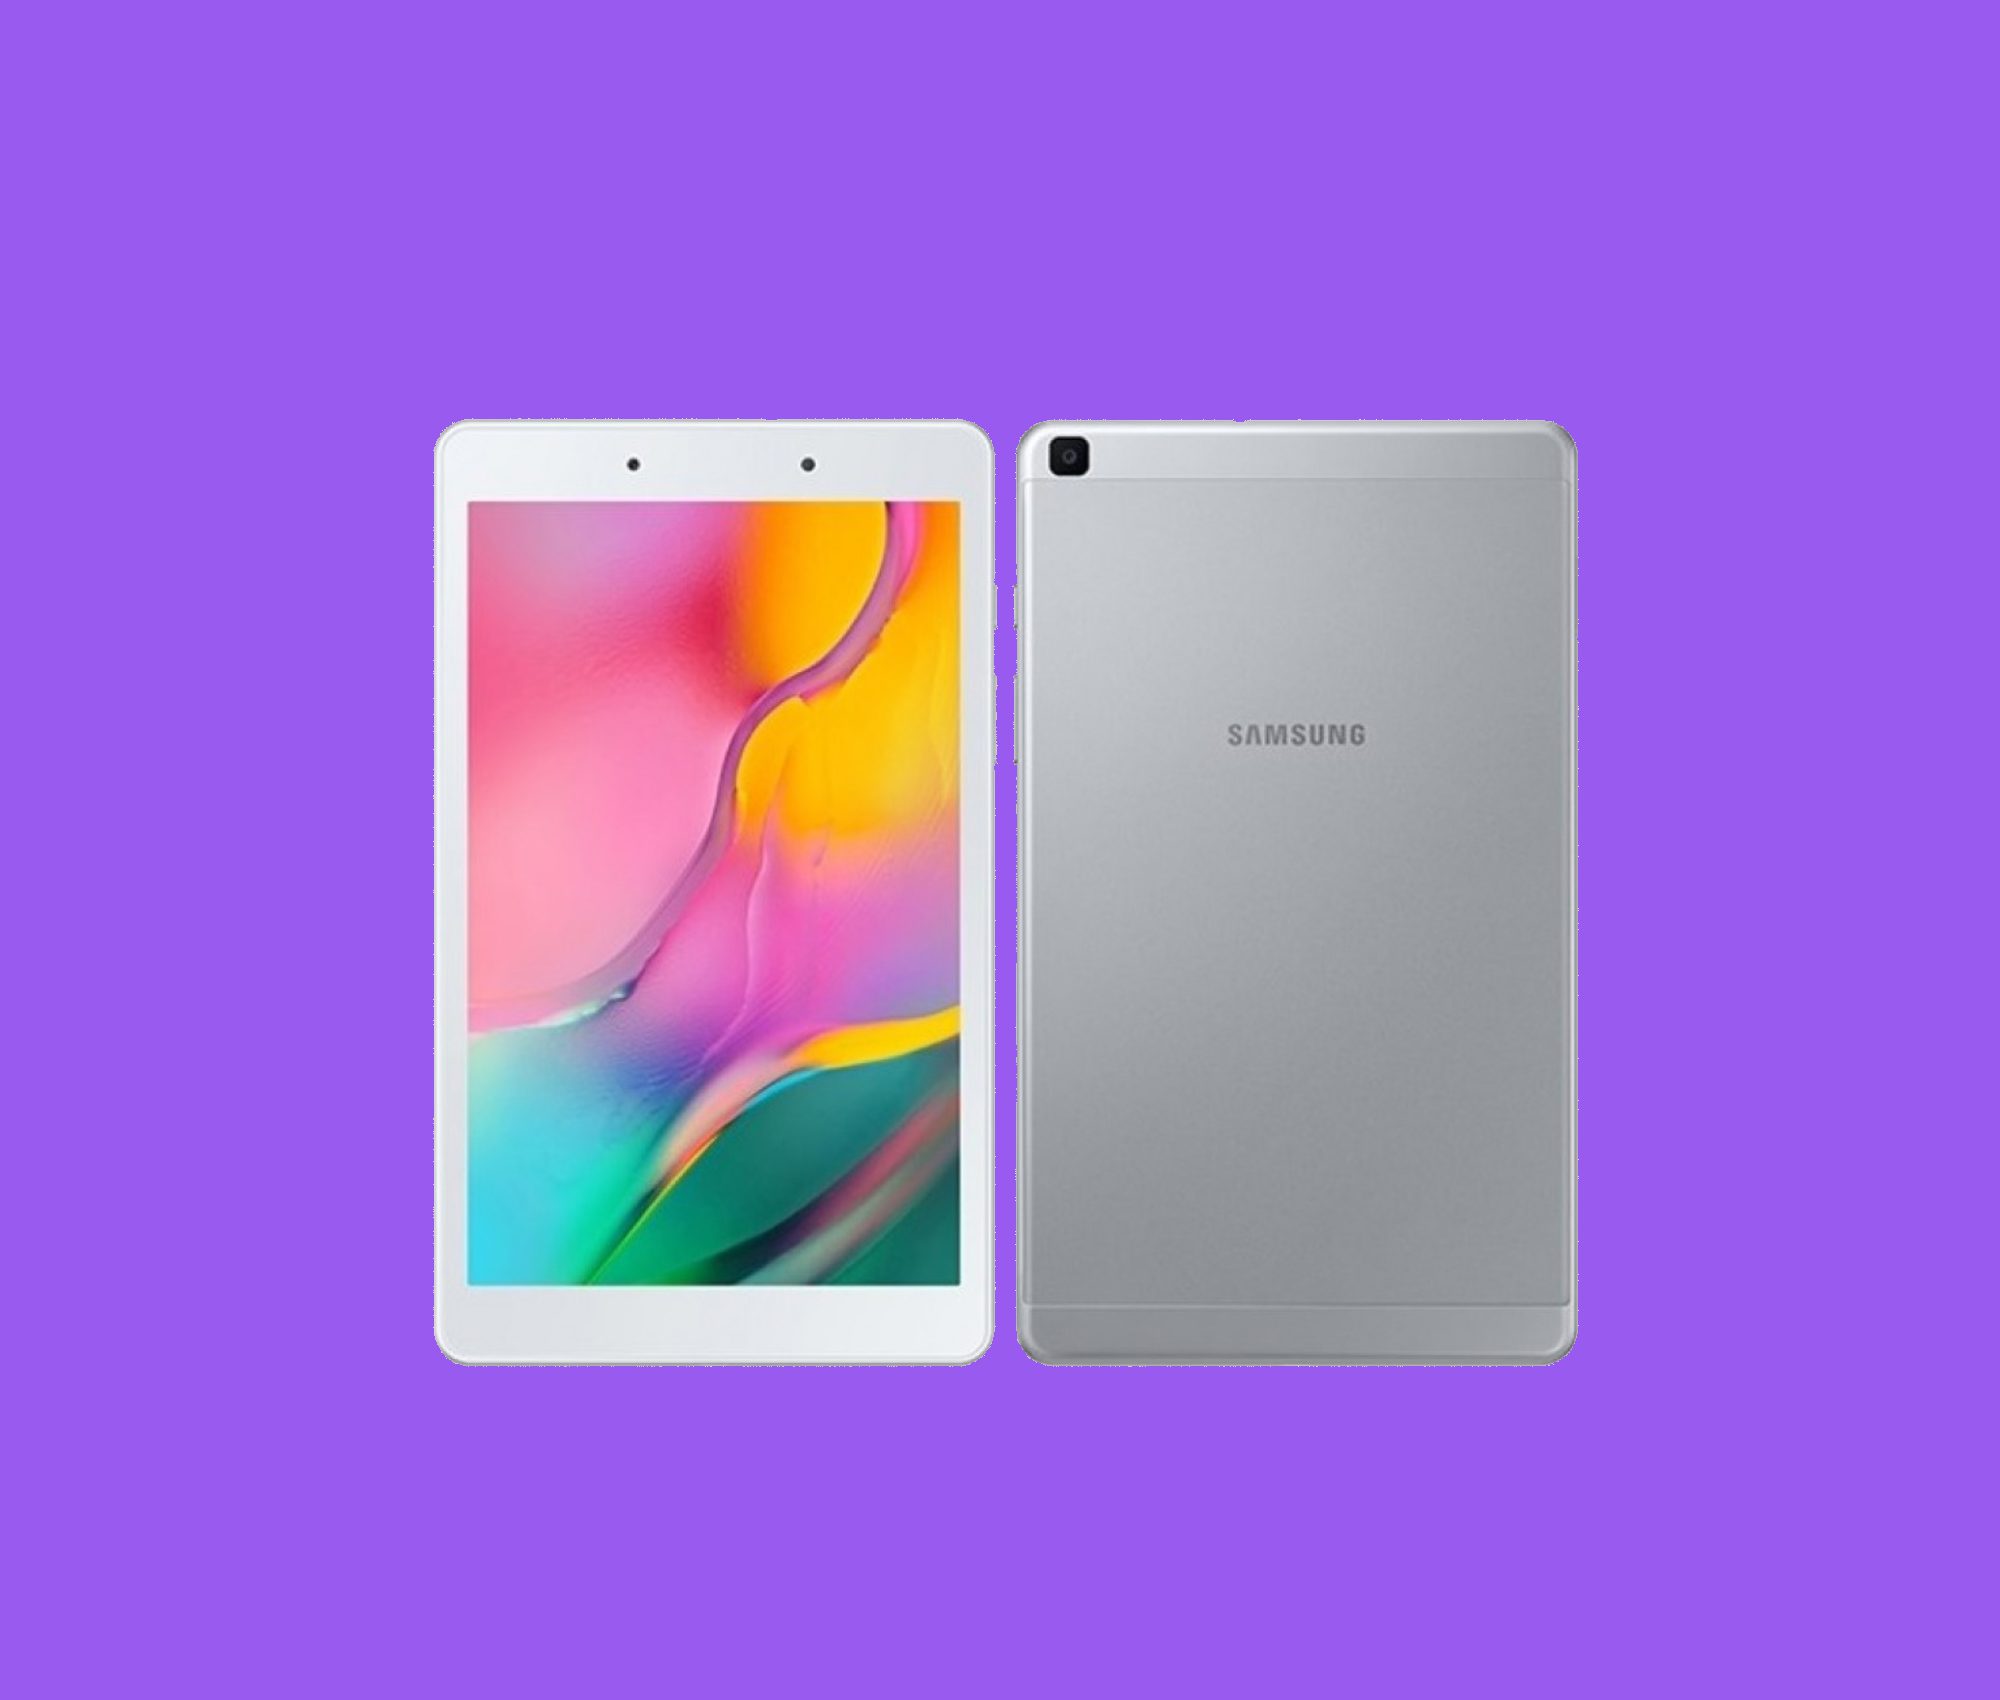 Samsung macht den neuen Beamten Galaxy Tab A 8.0 (2019) 1